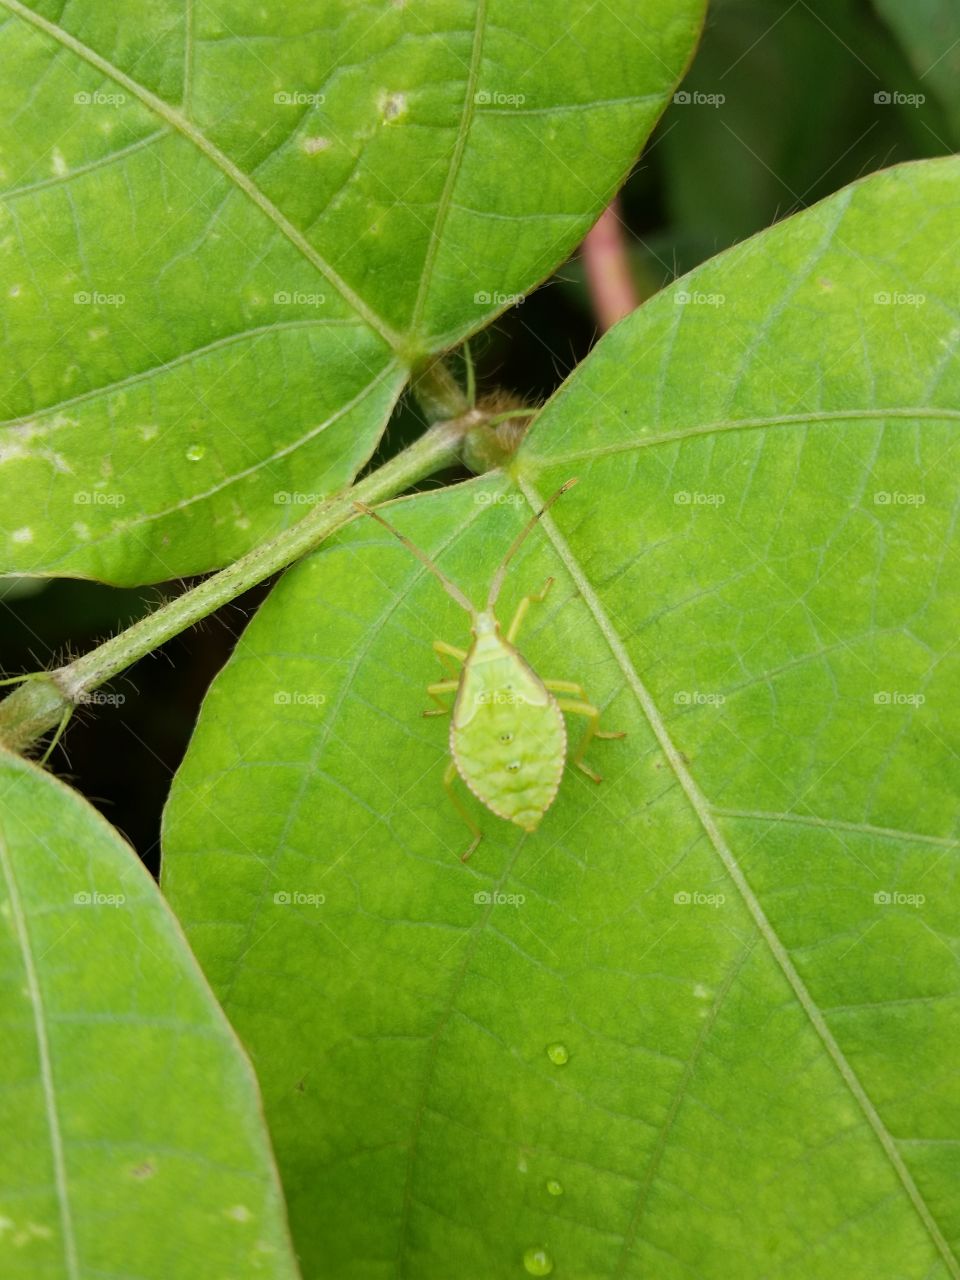 Larva of the stink bug